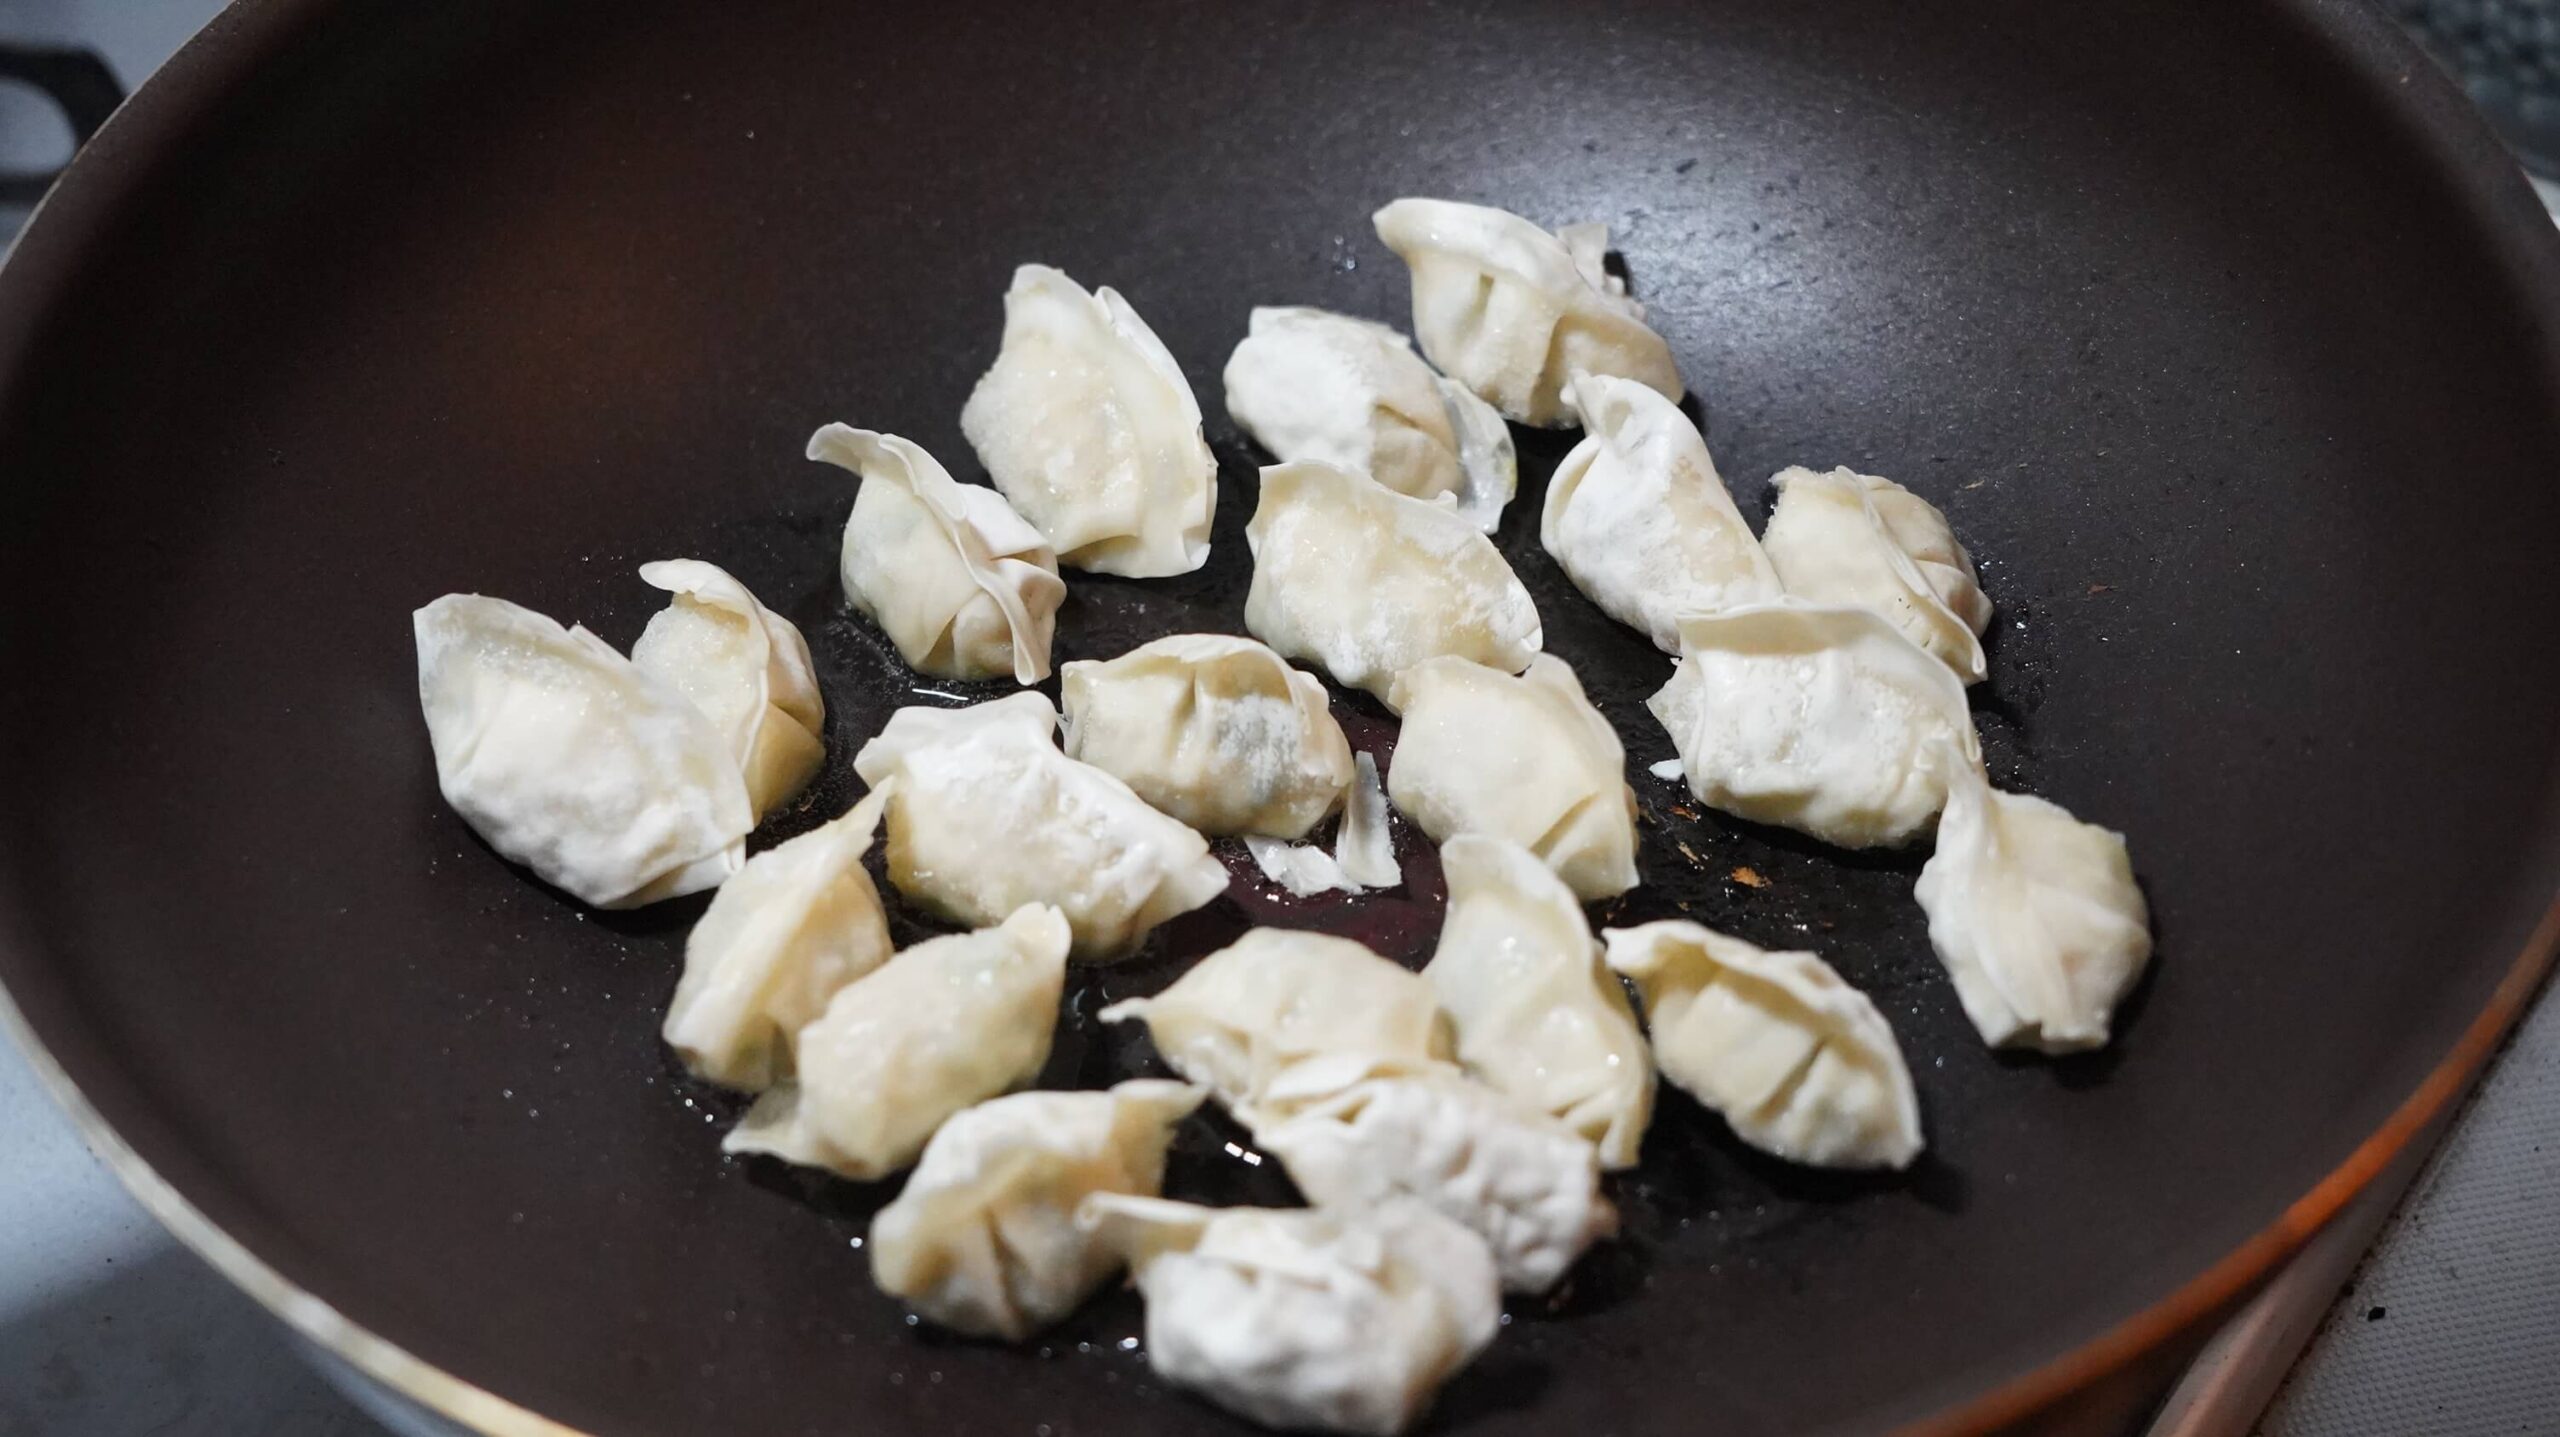 コストコの冷凍食品「ビビゴ 水餃子」をフライパンで揚げ焼きしている写真